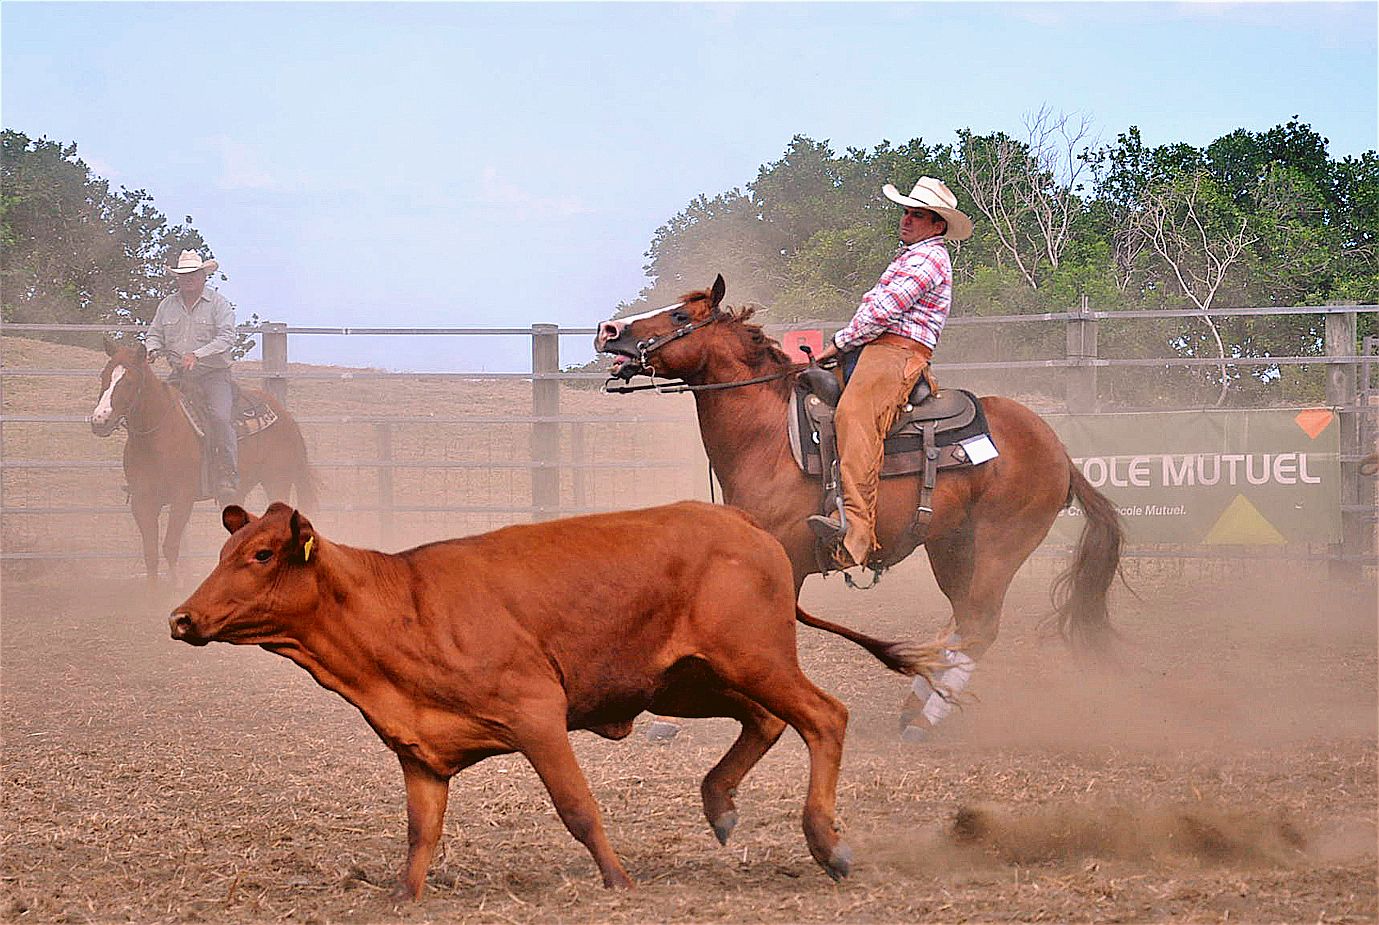 Les épreuves d’équitation western ont débuté hier après-midi avec le cutting. Un cavalier, assisté de deux autres, doit sélectionner un veau dans un troupeau, l’isoler et le travailler dans une zone déterminée.